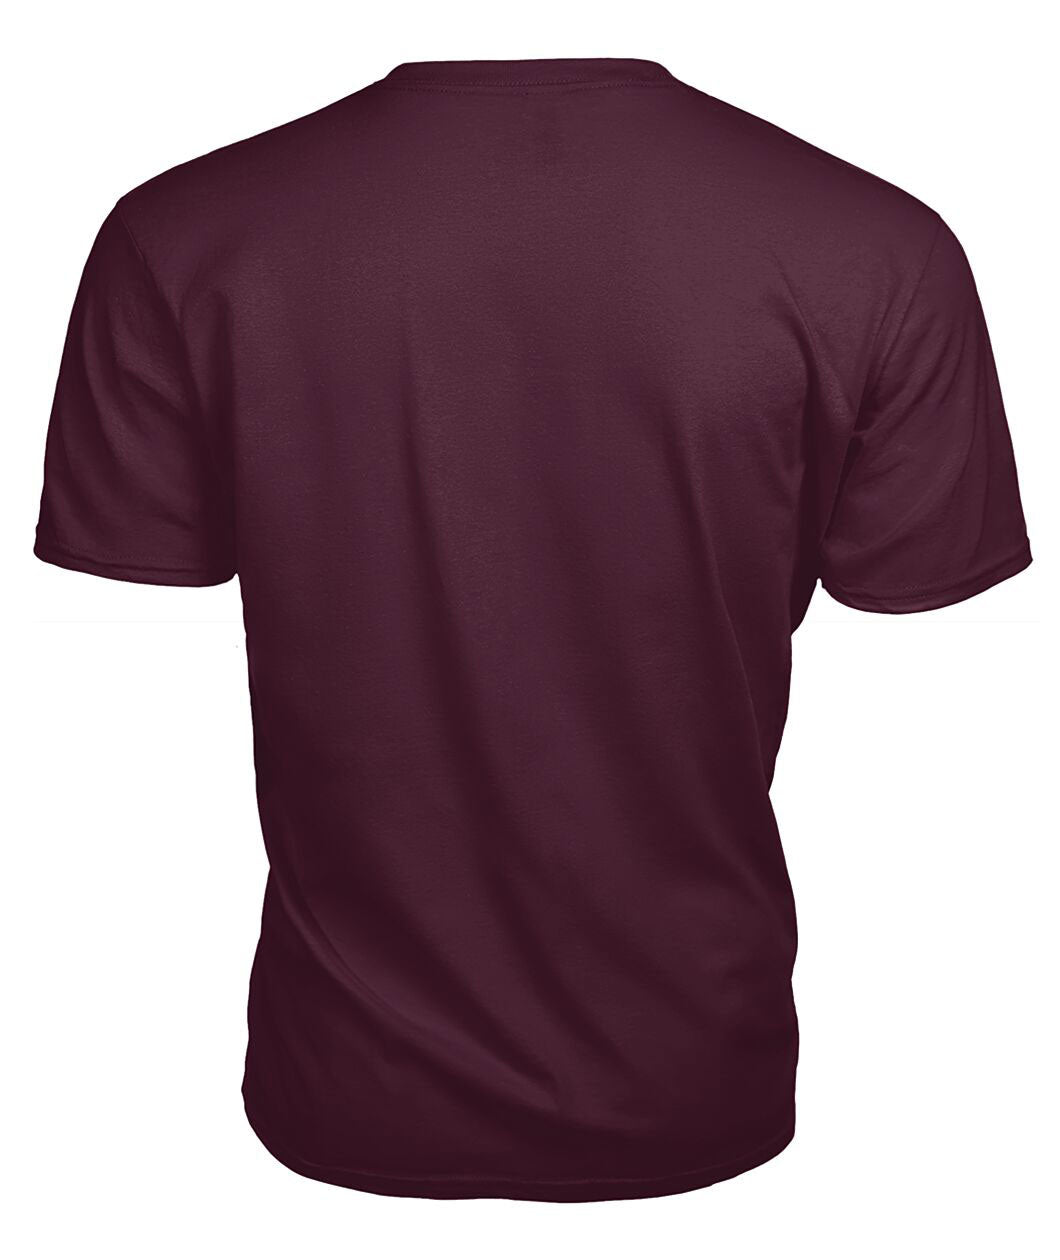 Stewart Royal Modern Tartan Crest 2D T-shirt - Blood Runs Through My Veins Style